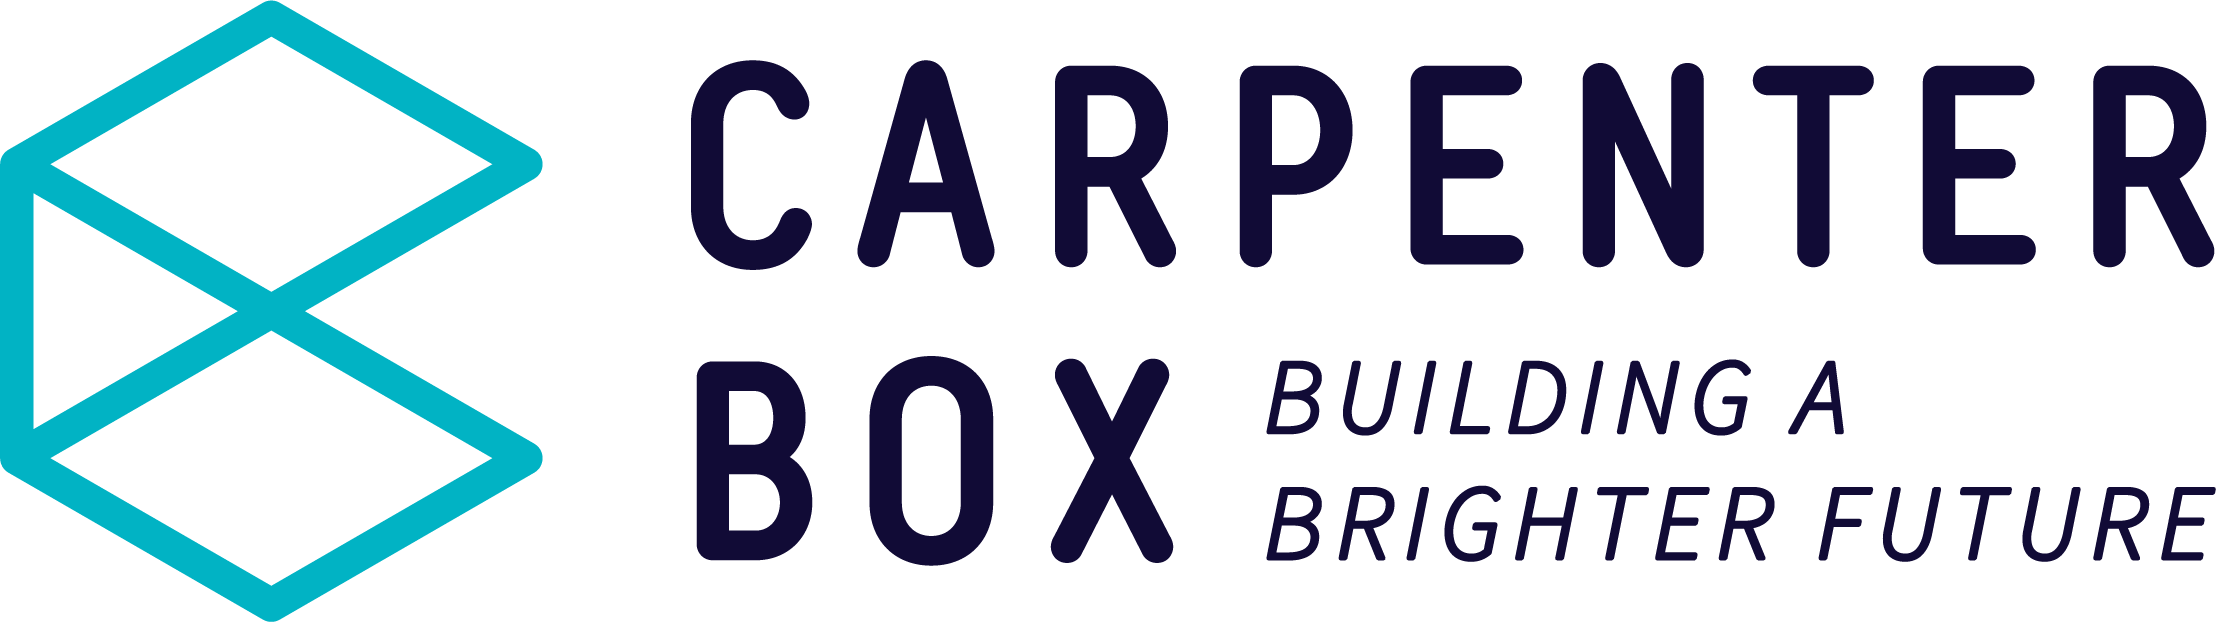 Carpenter Box - Building a brighter future